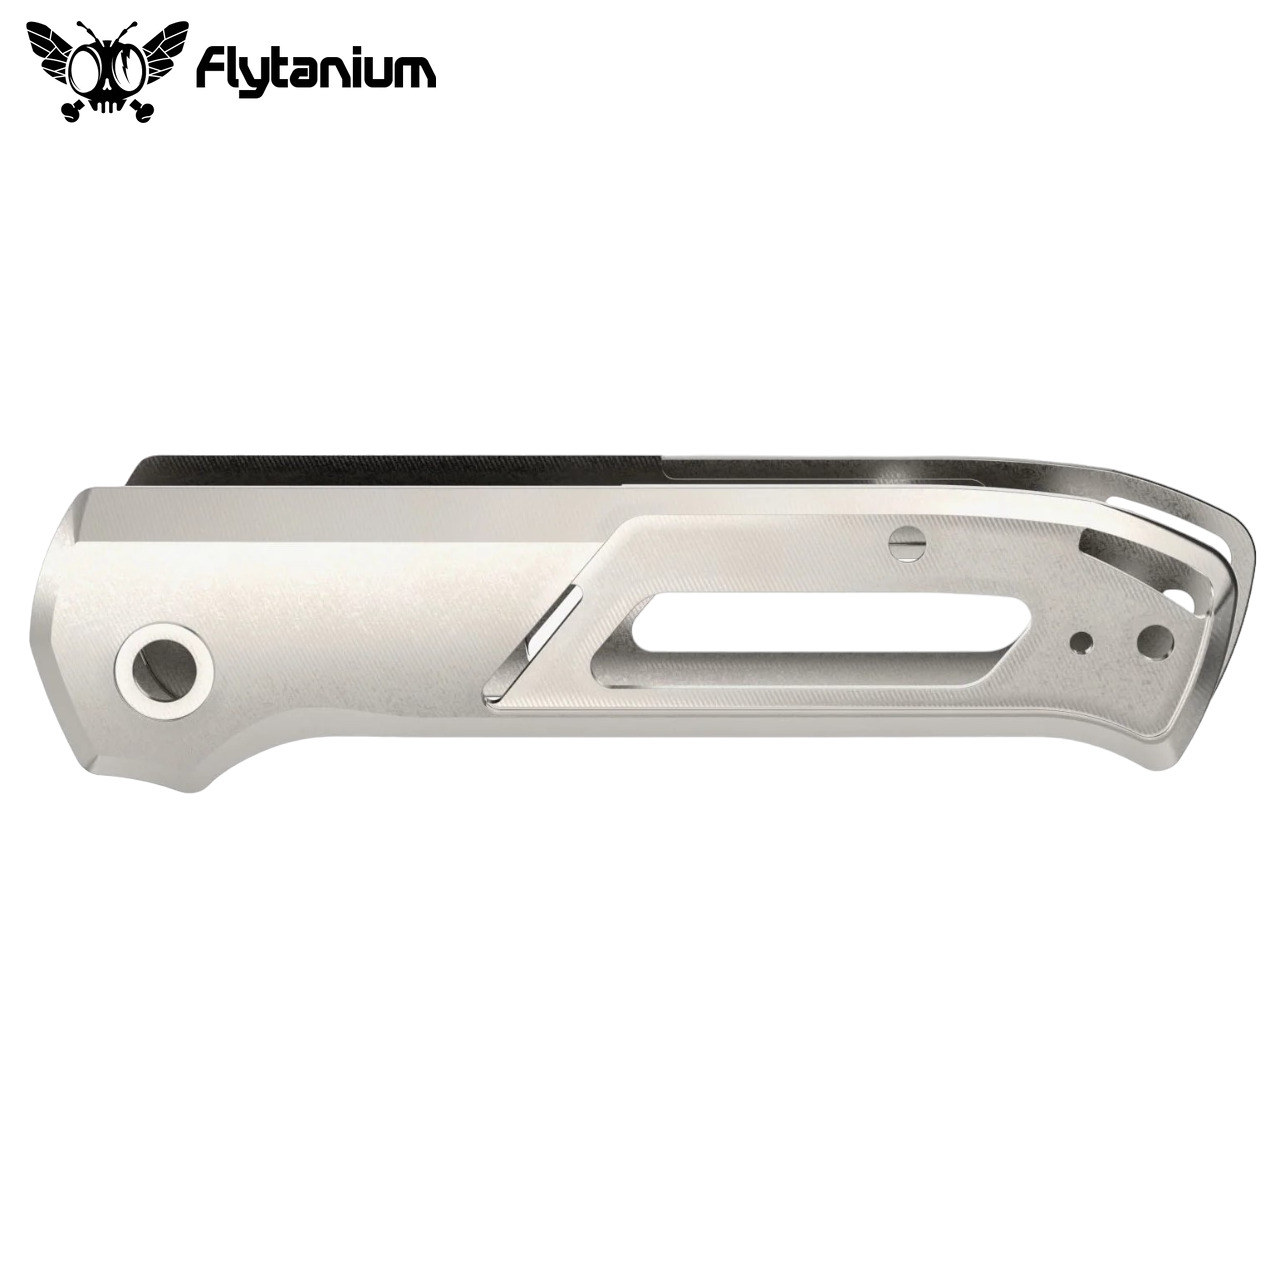 Flytanium Arcade Titanium Handle Kit (Stonewashed) FLY-1348